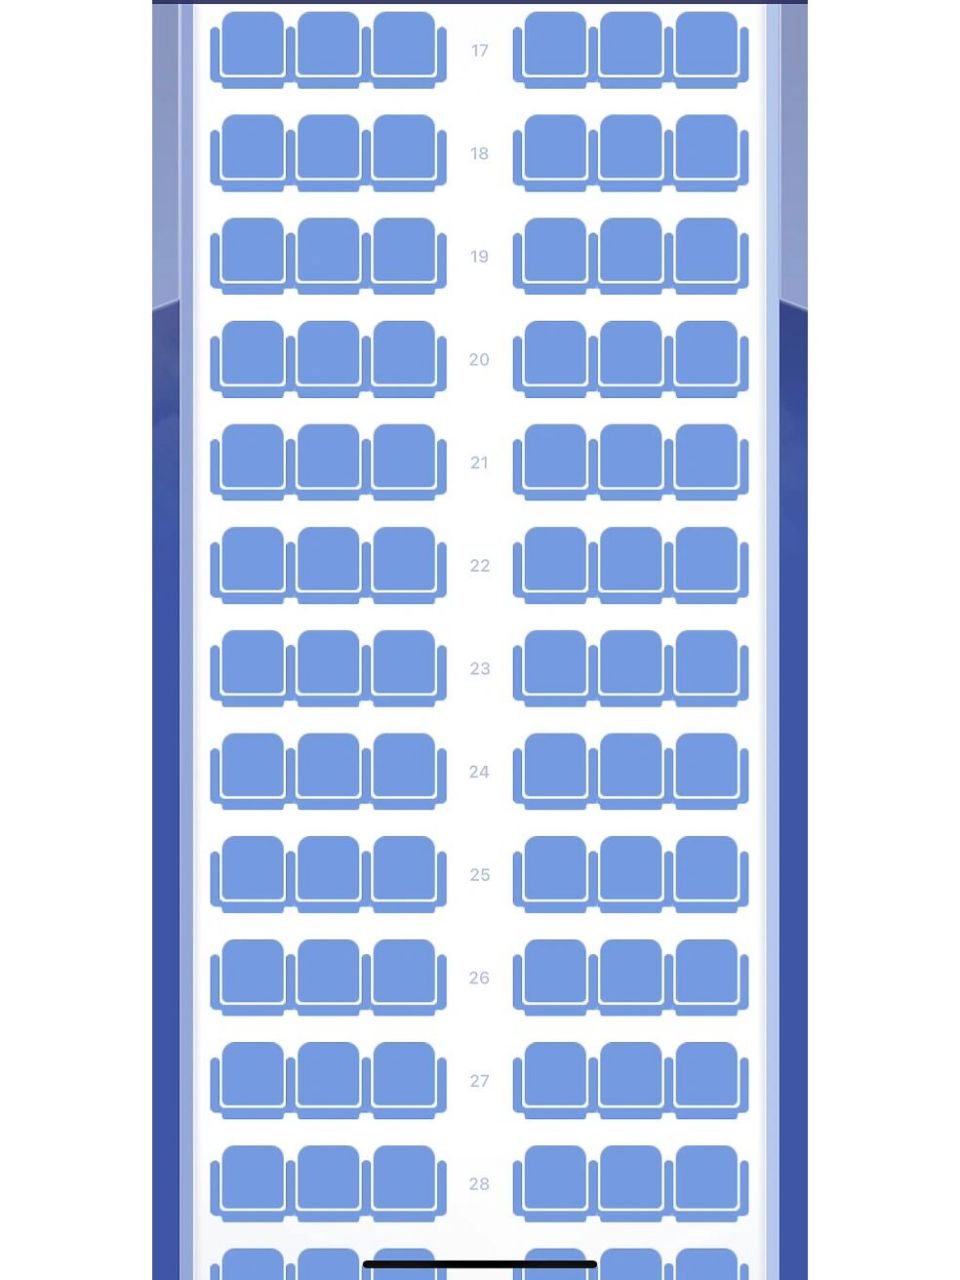 波音737-800(中)座位图图片